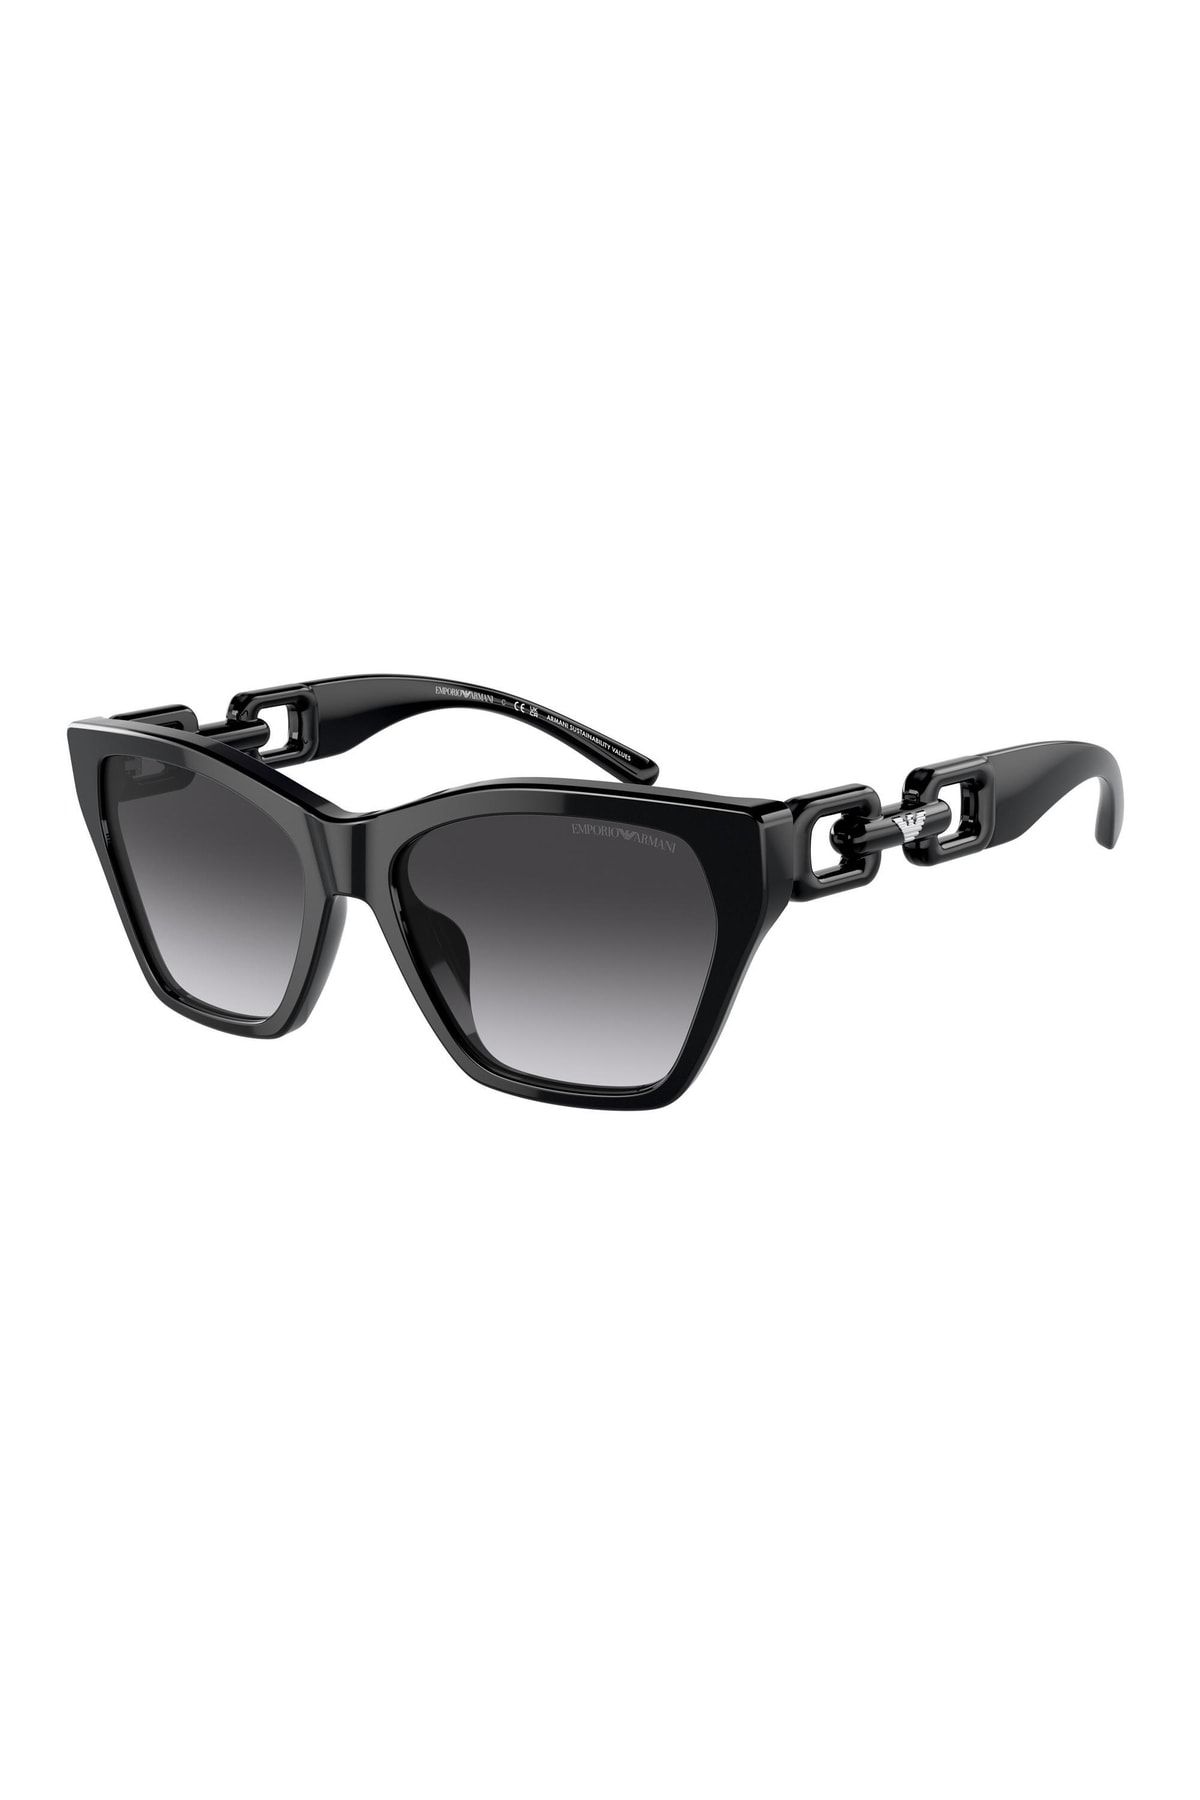 Emporio Armani EA4178 5875/8G Sunglasses Black